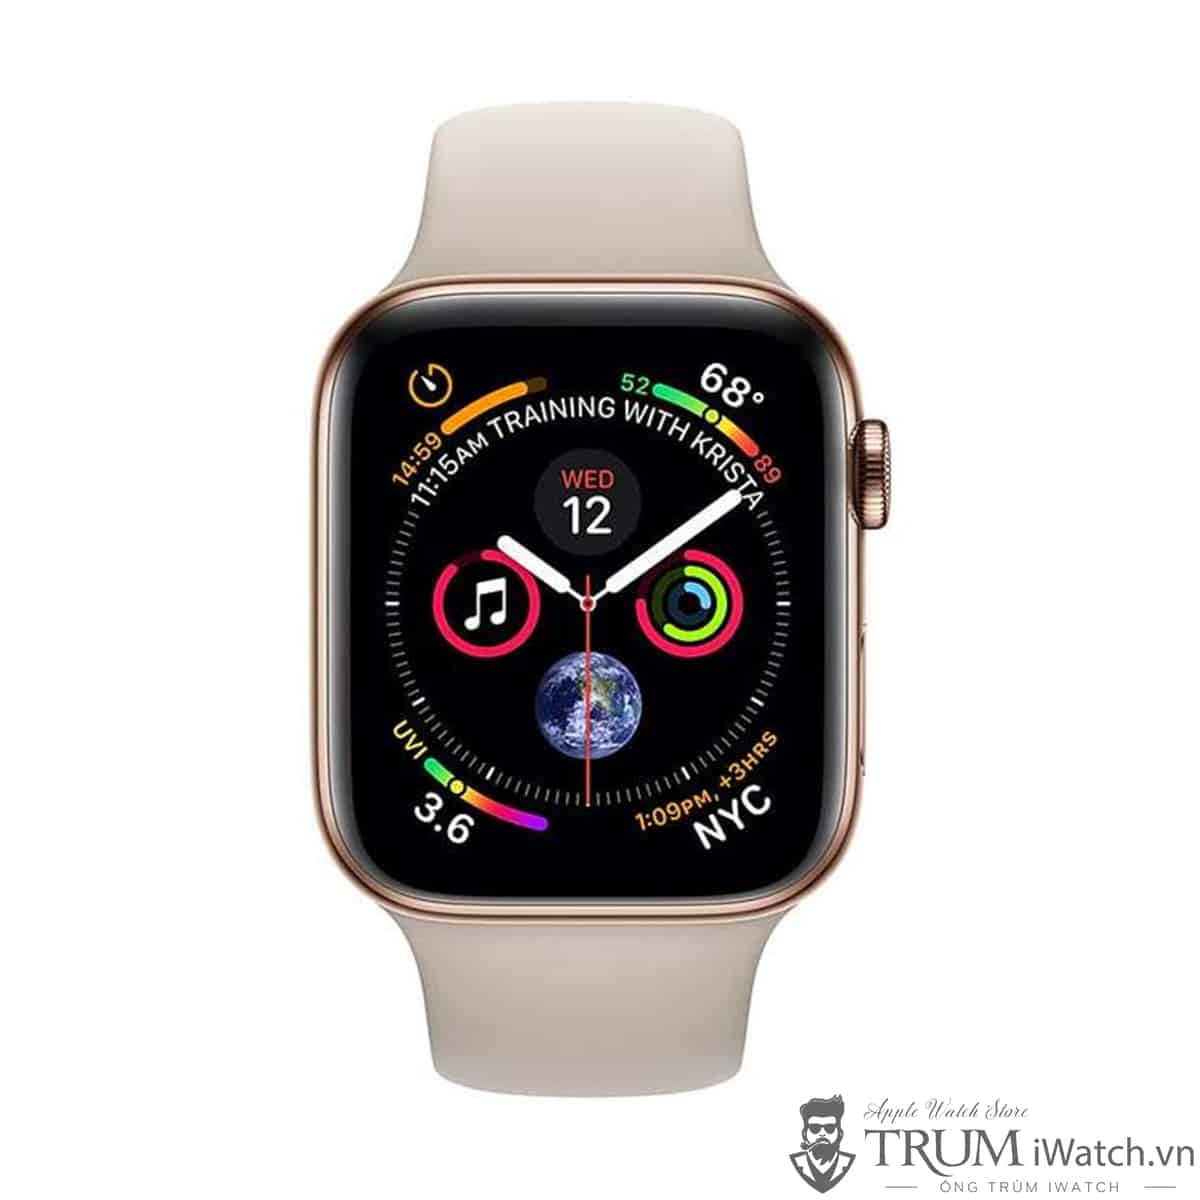 Bộ Sưu Tập Ảnh Apple Watch Series 4 - Hình Ảnh Series 4 Đẹp Nhất